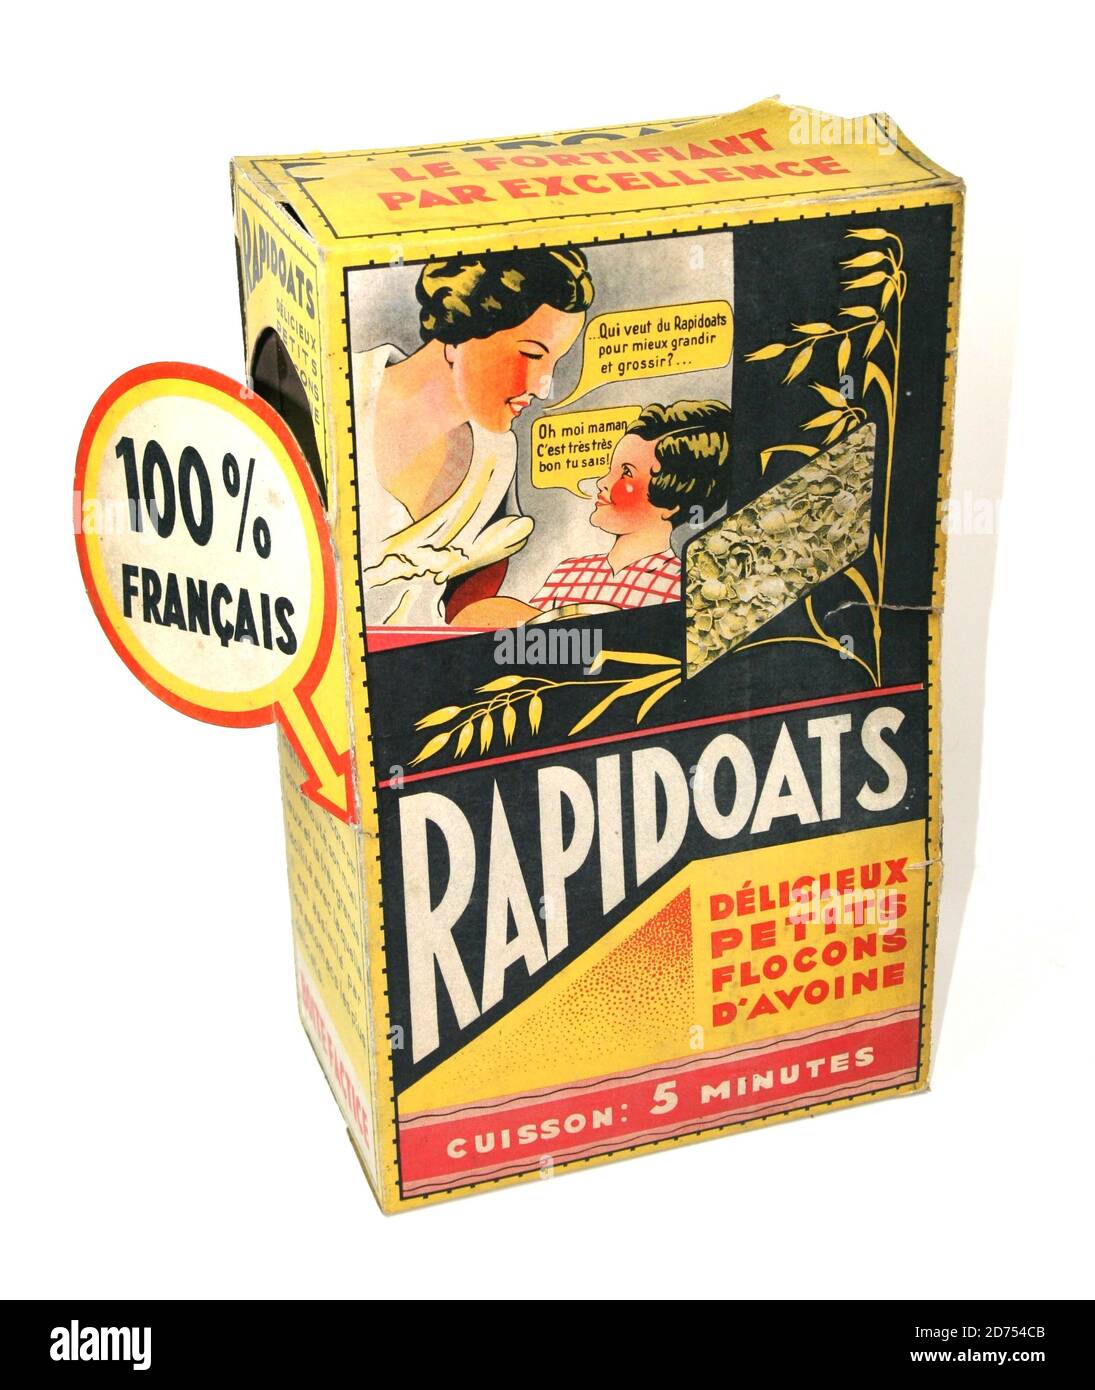 Boite présentoir factice de flocons d avoine Rapidoats vers 1945 Stock Photo